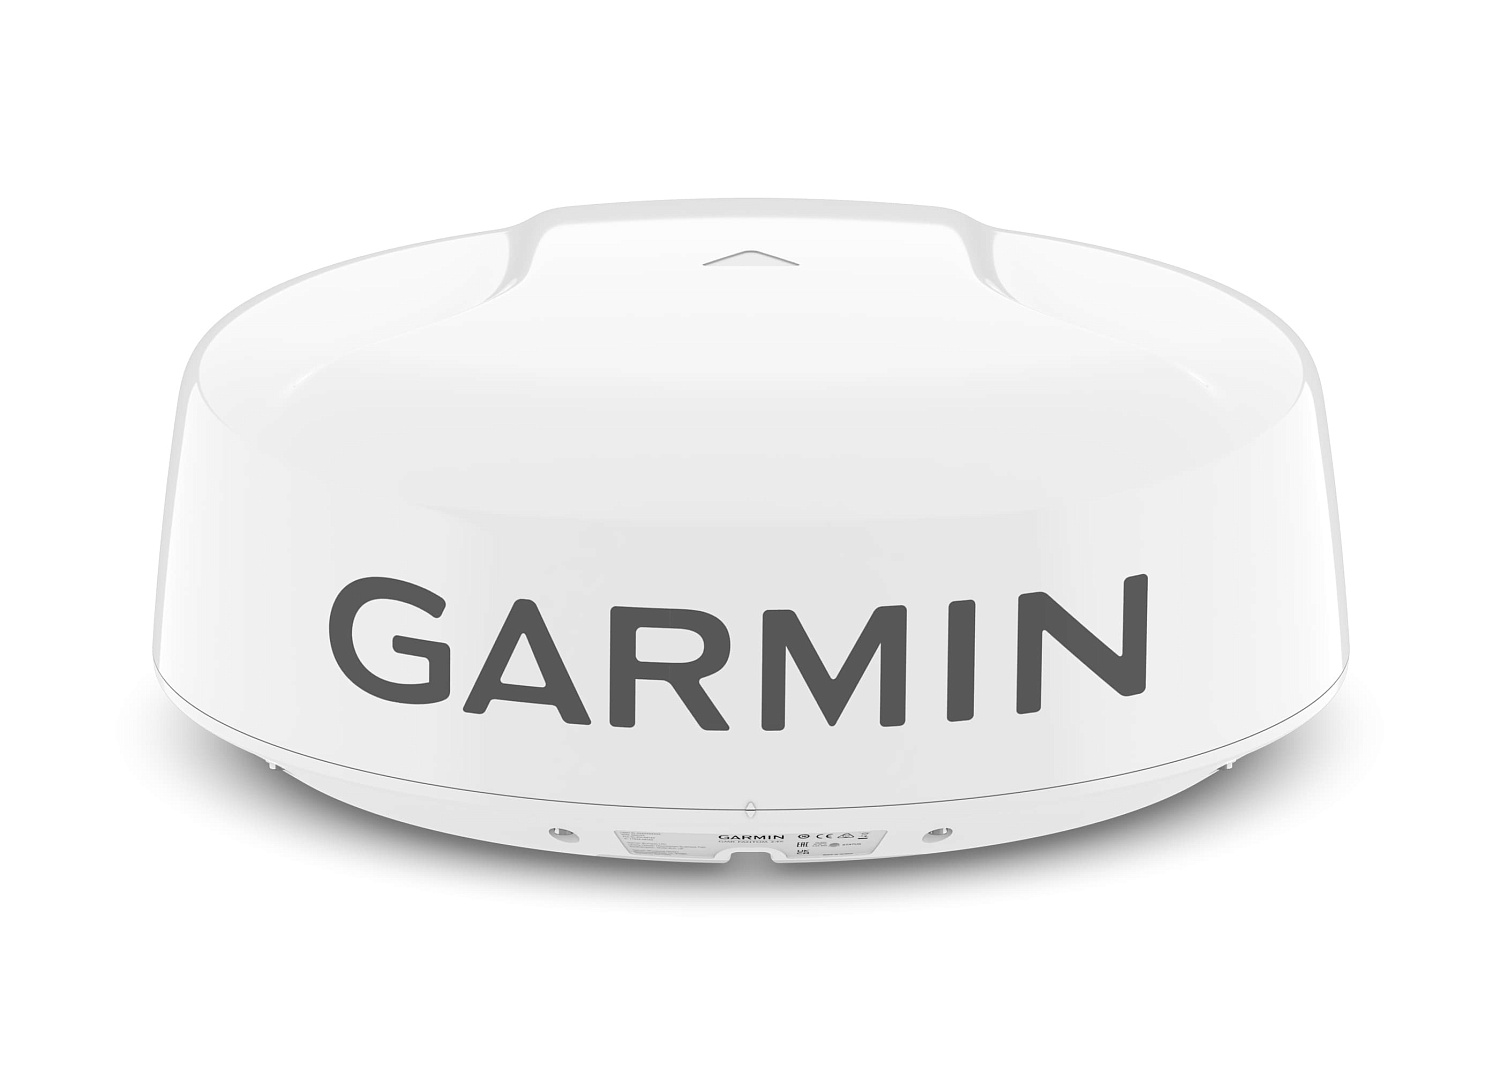 GARMIN GMR FANTOM 24x Doppler Radar Antenna / white